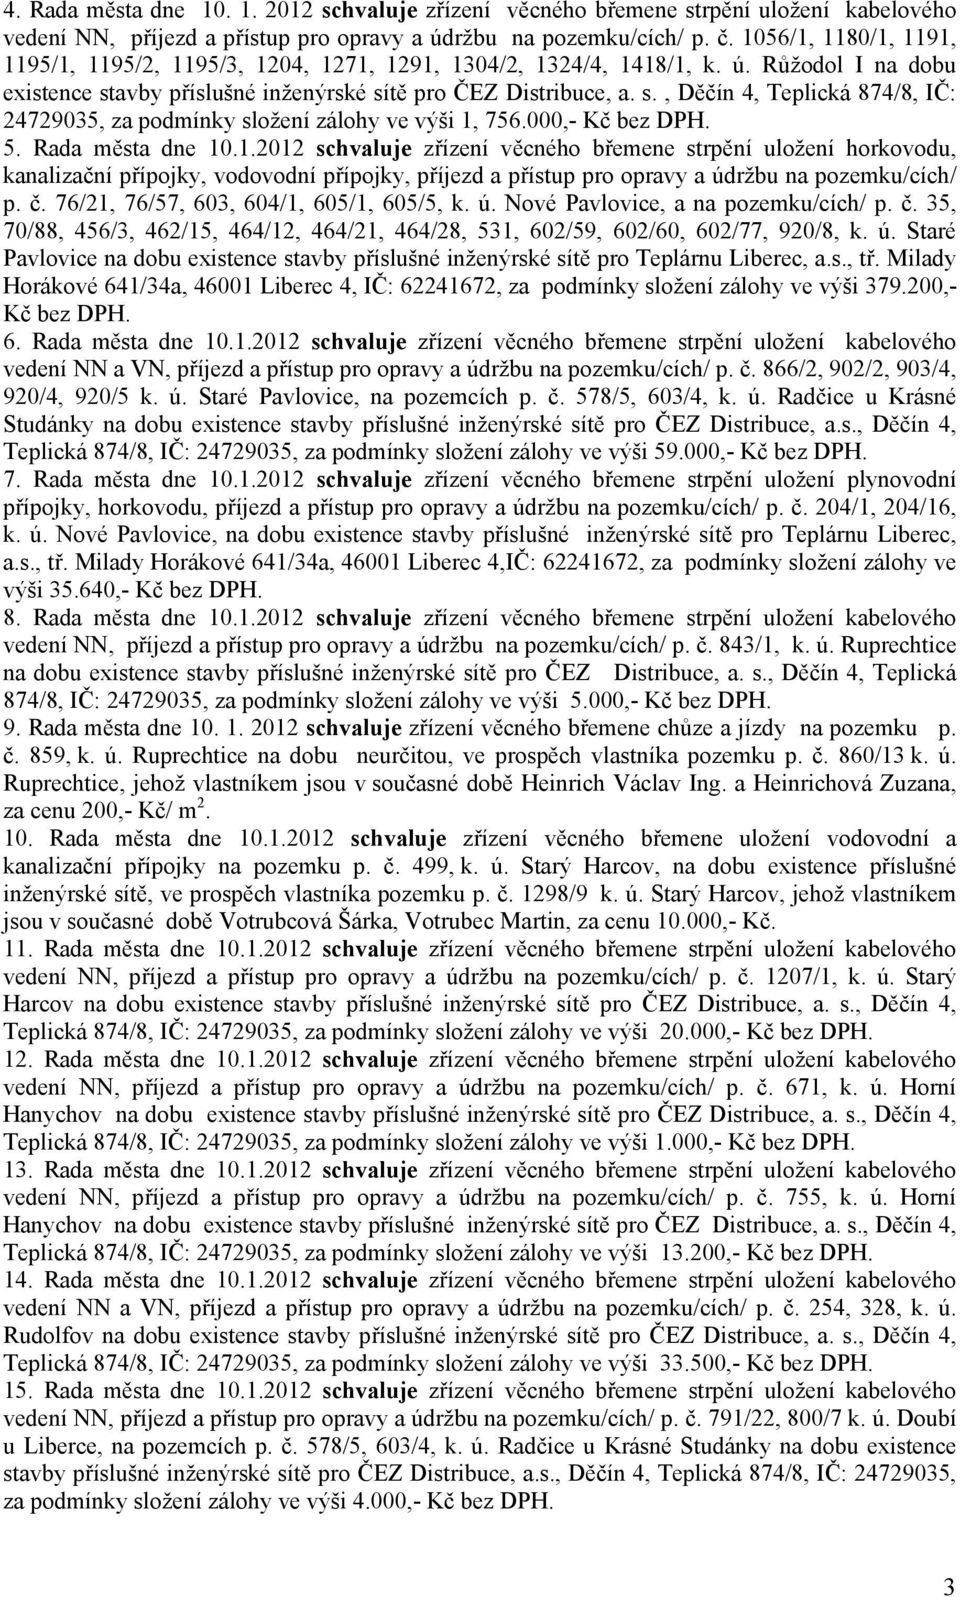 avby příslušné inženýrské sítě pro ČEZ Distribuce, a. s., Děčín 4, Teplická 874/8, IČ: 24729035, za podmínky složení zálohy ve výši 1,